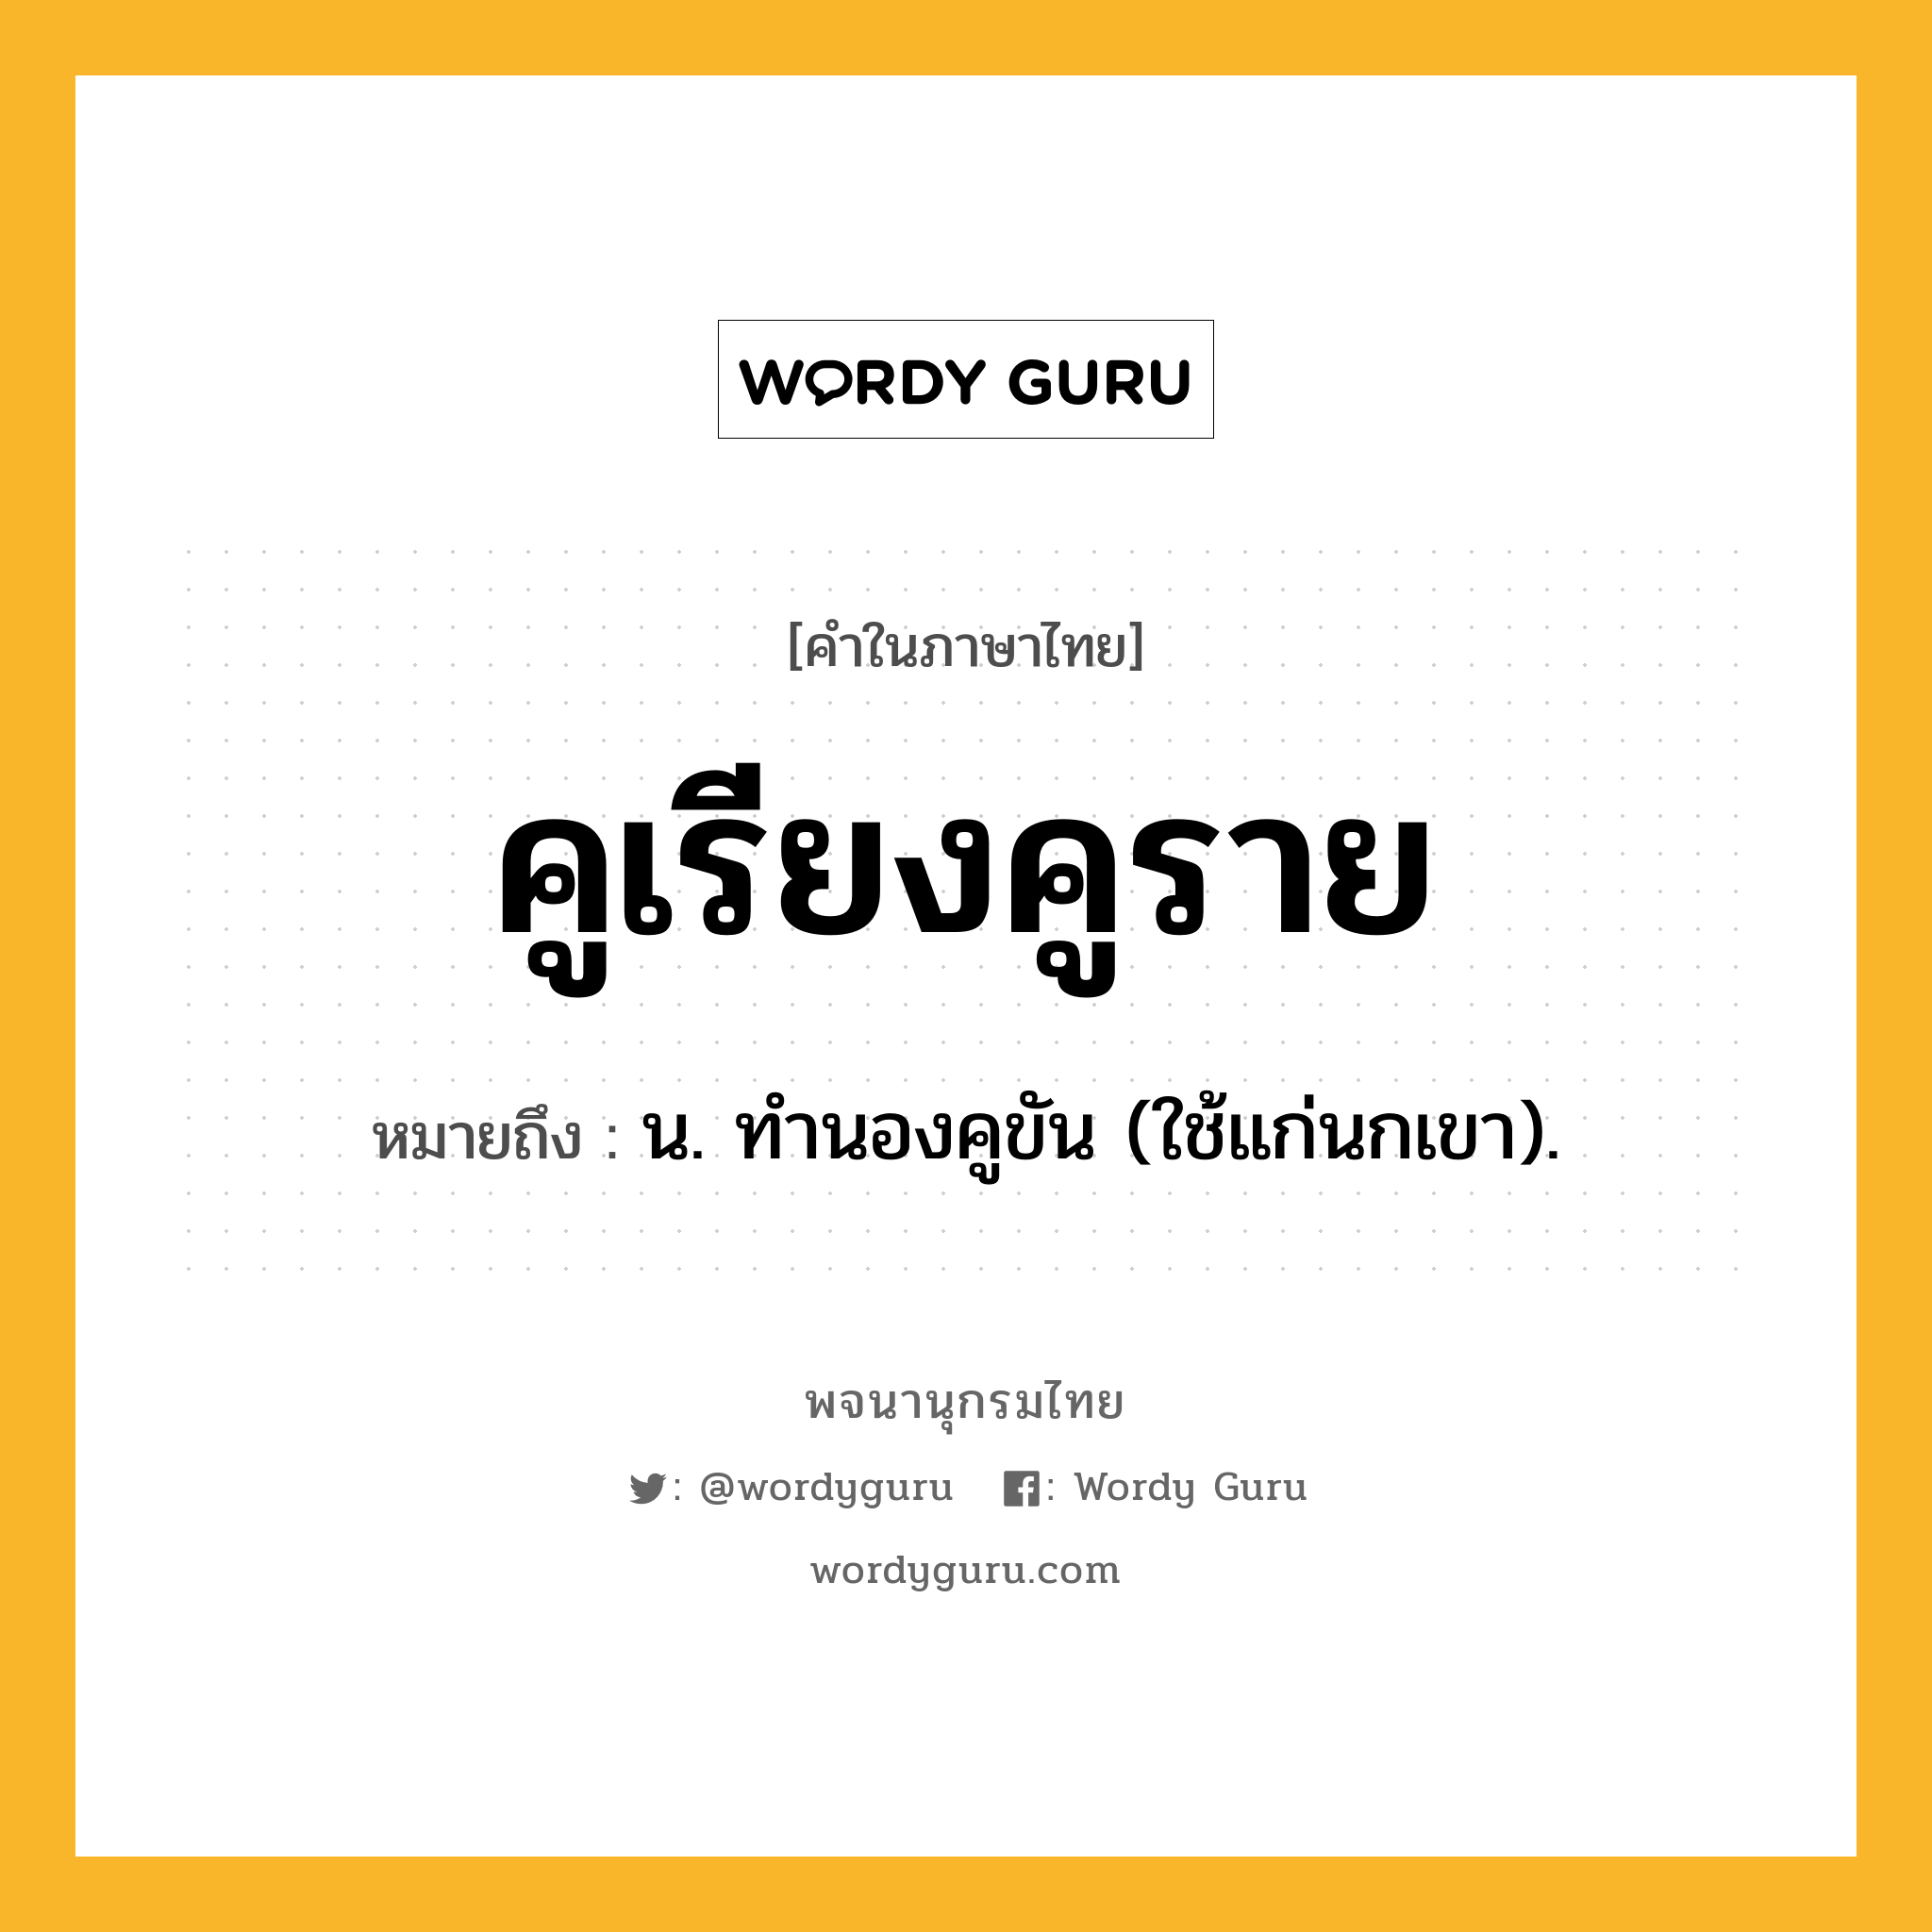 คูเรียงคูราย ความหมาย หมายถึงอะไร?, คำในภาษาไทย คูเรียงคูราย หมายถึง น. ทํานองคูขัน (ใช้แก่นกเขา).